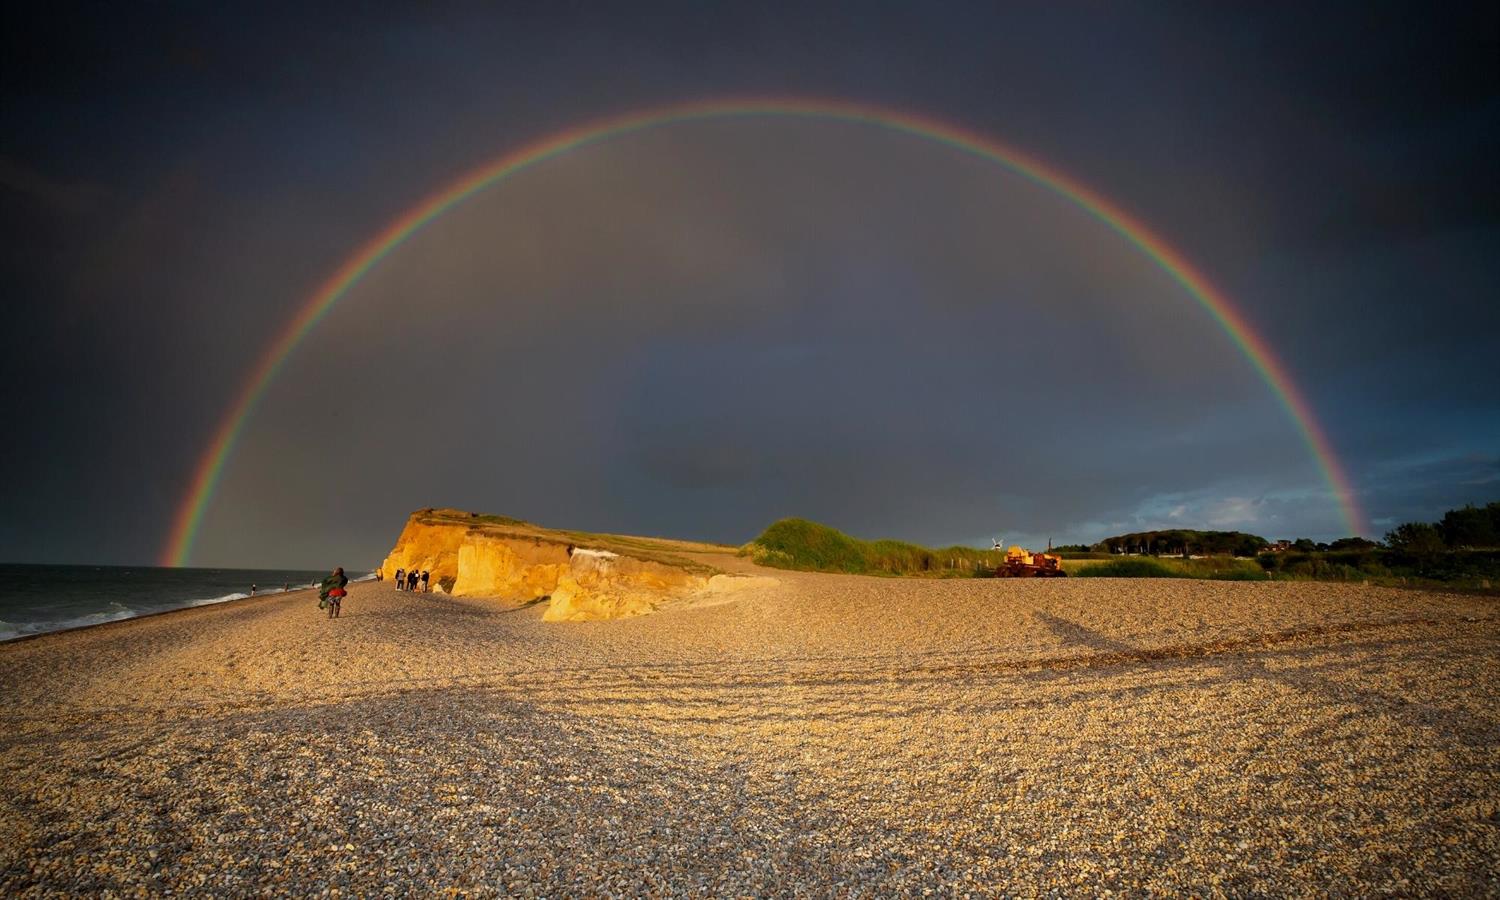 Weybourne Beach in North Norfolk with rainbow